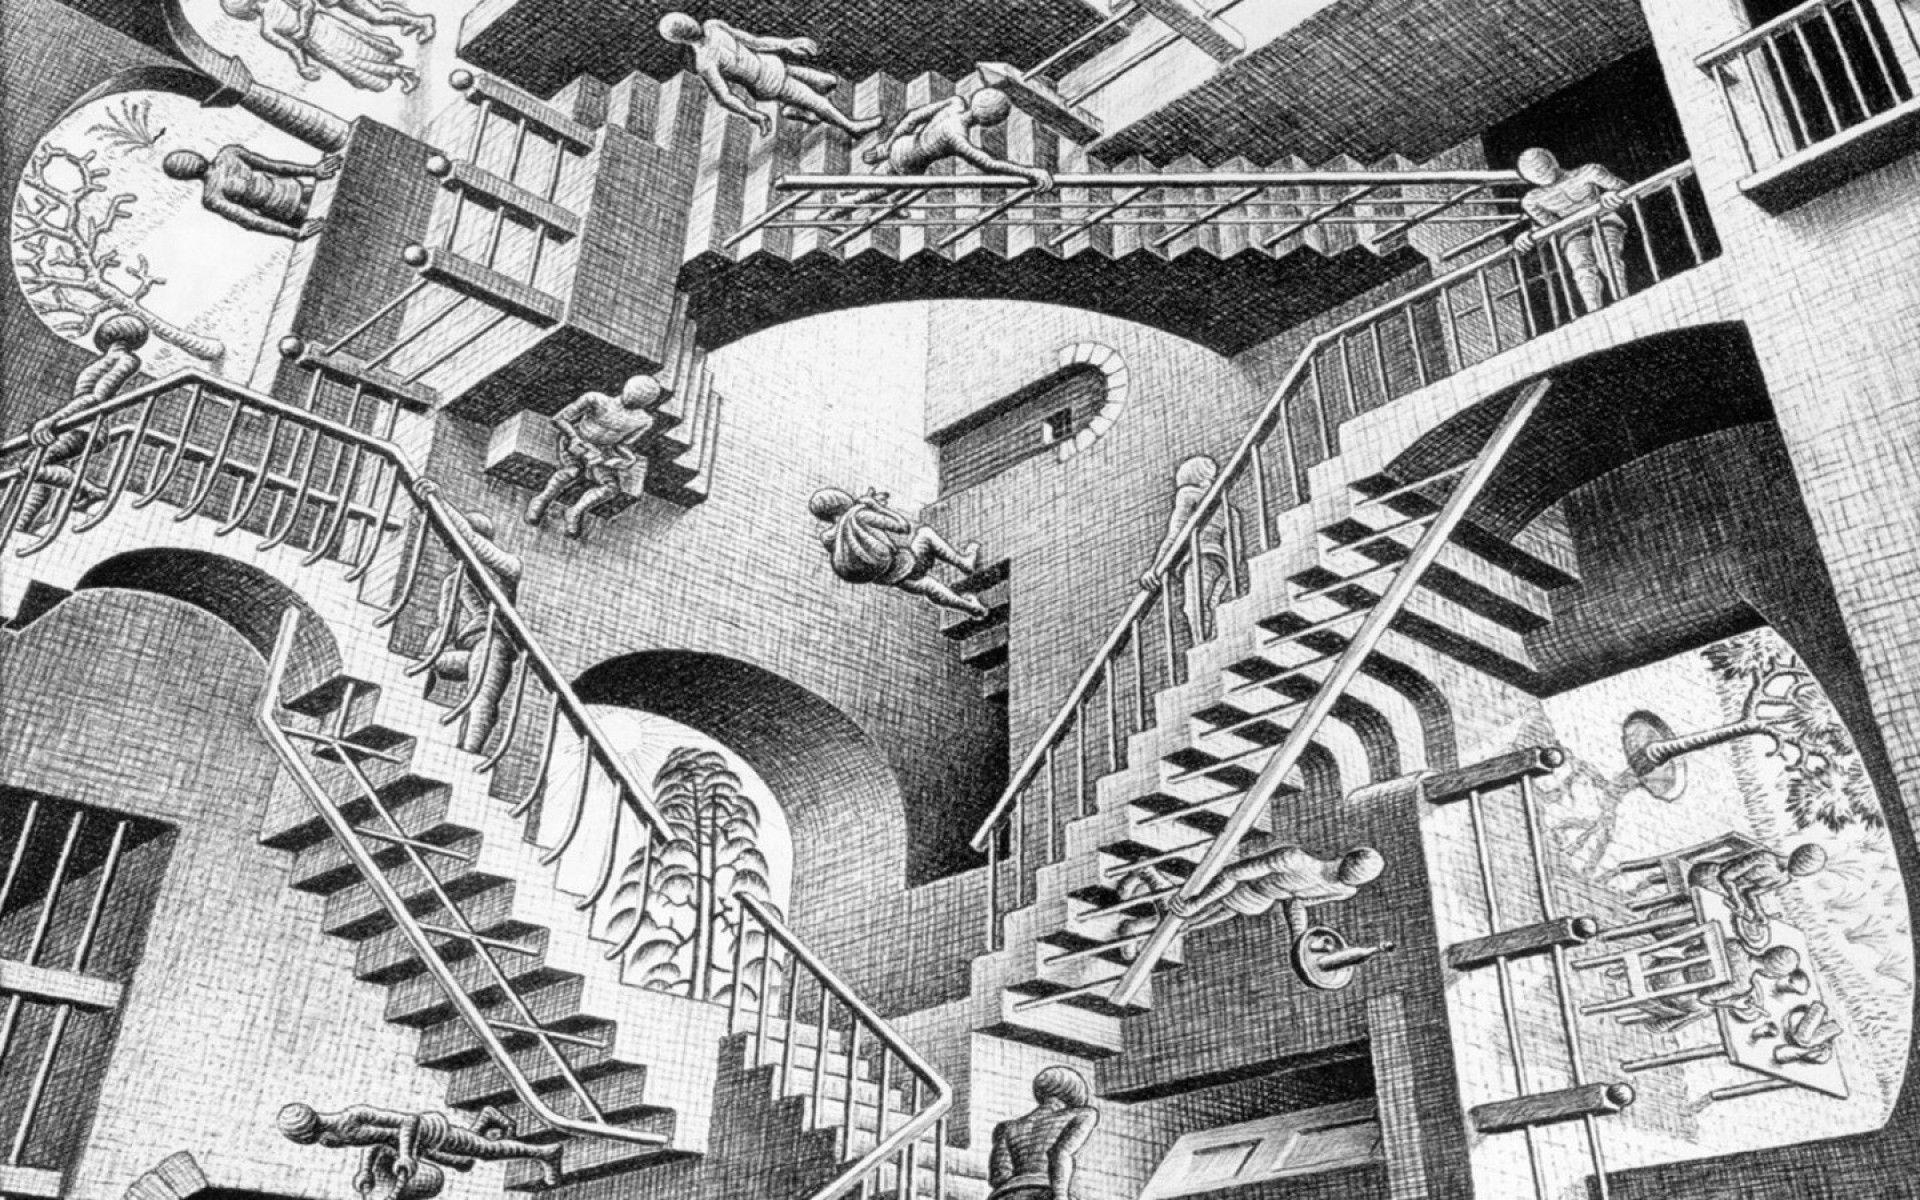 M.C. Escher, Other artist, Escher wallpapers, Graphic art, 1920x1200 HD Desktop